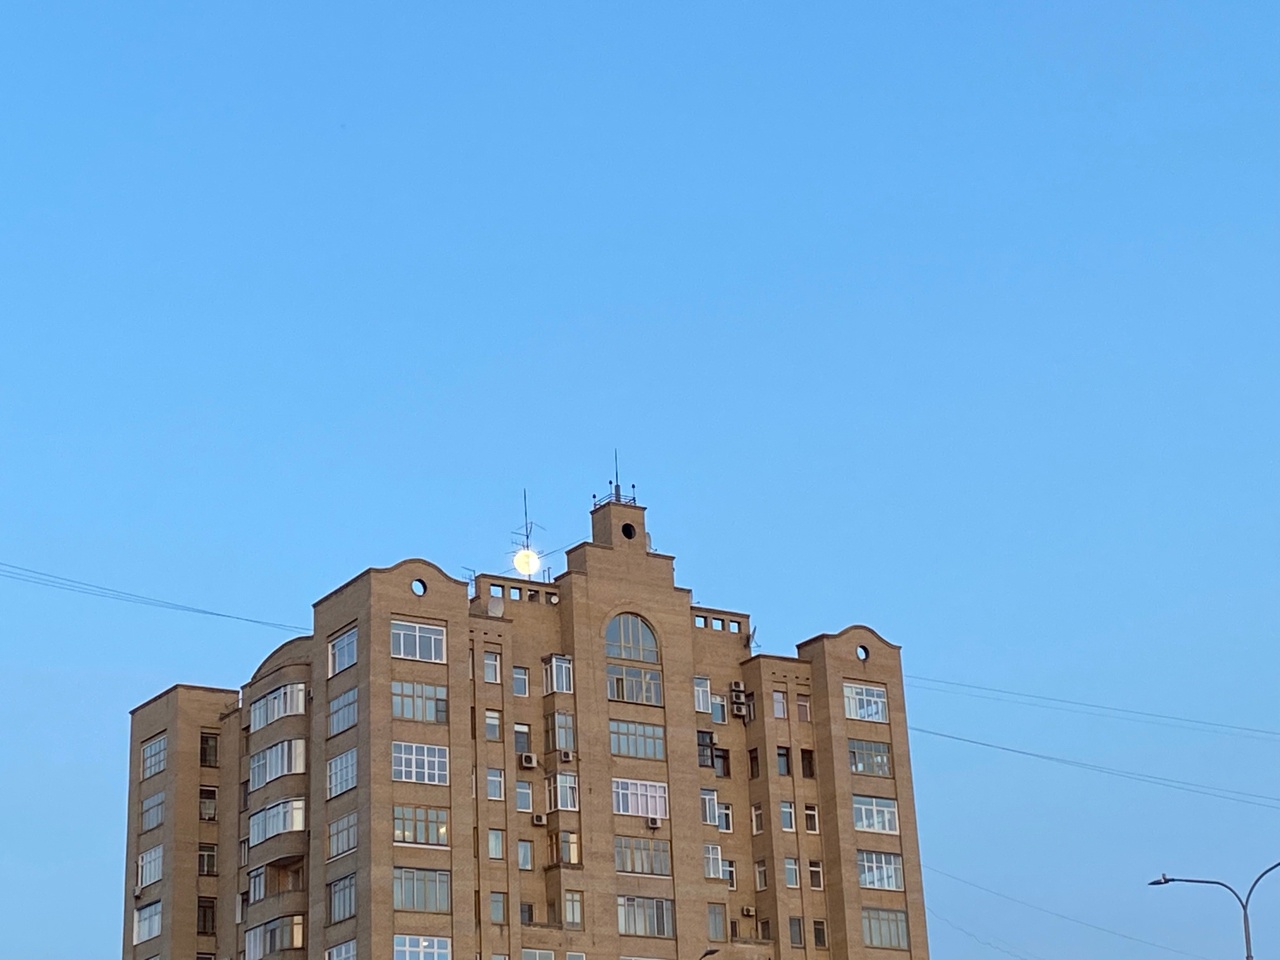 Фотоподборка выходного дня, посвященная омской архитектуре